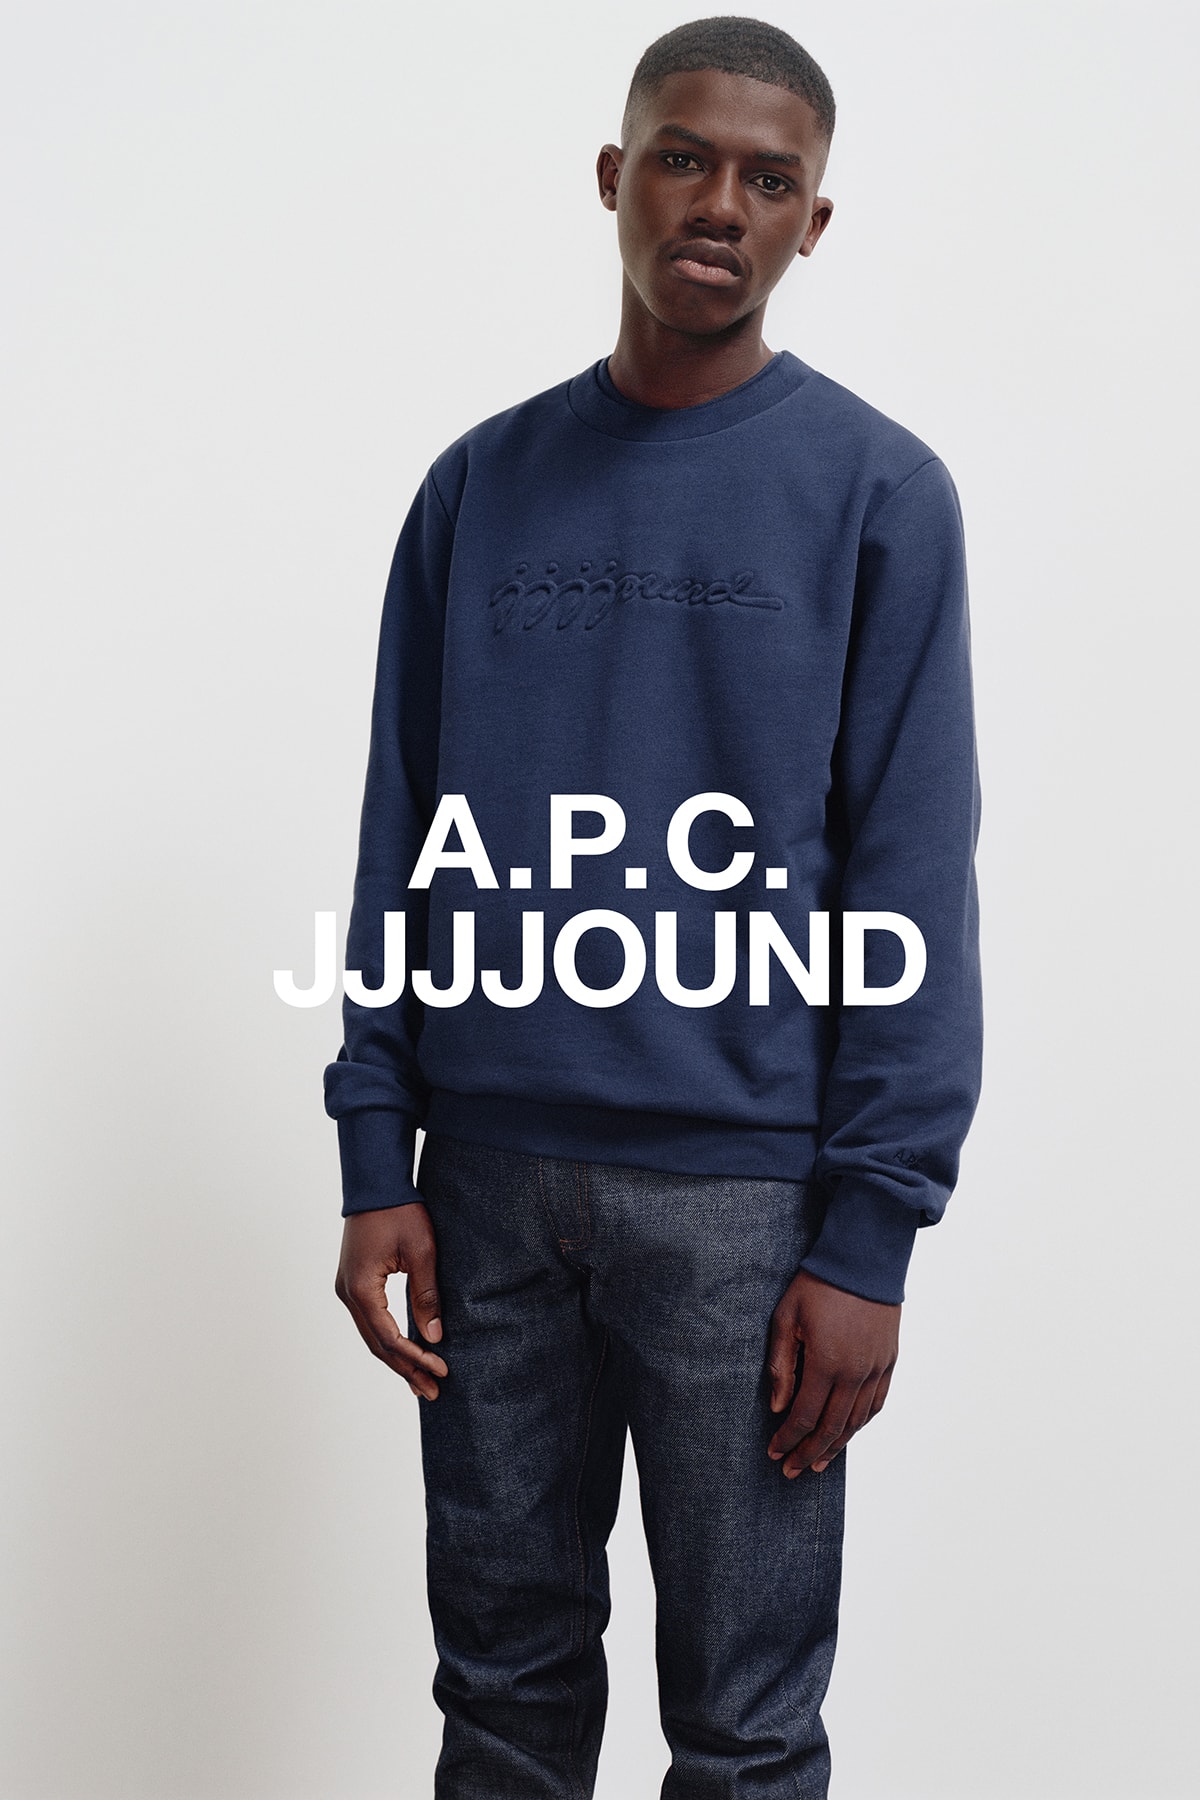 JJJJound x A.P.C. Collection Lookbook Justin Sweatshirt Dark Navy Blue